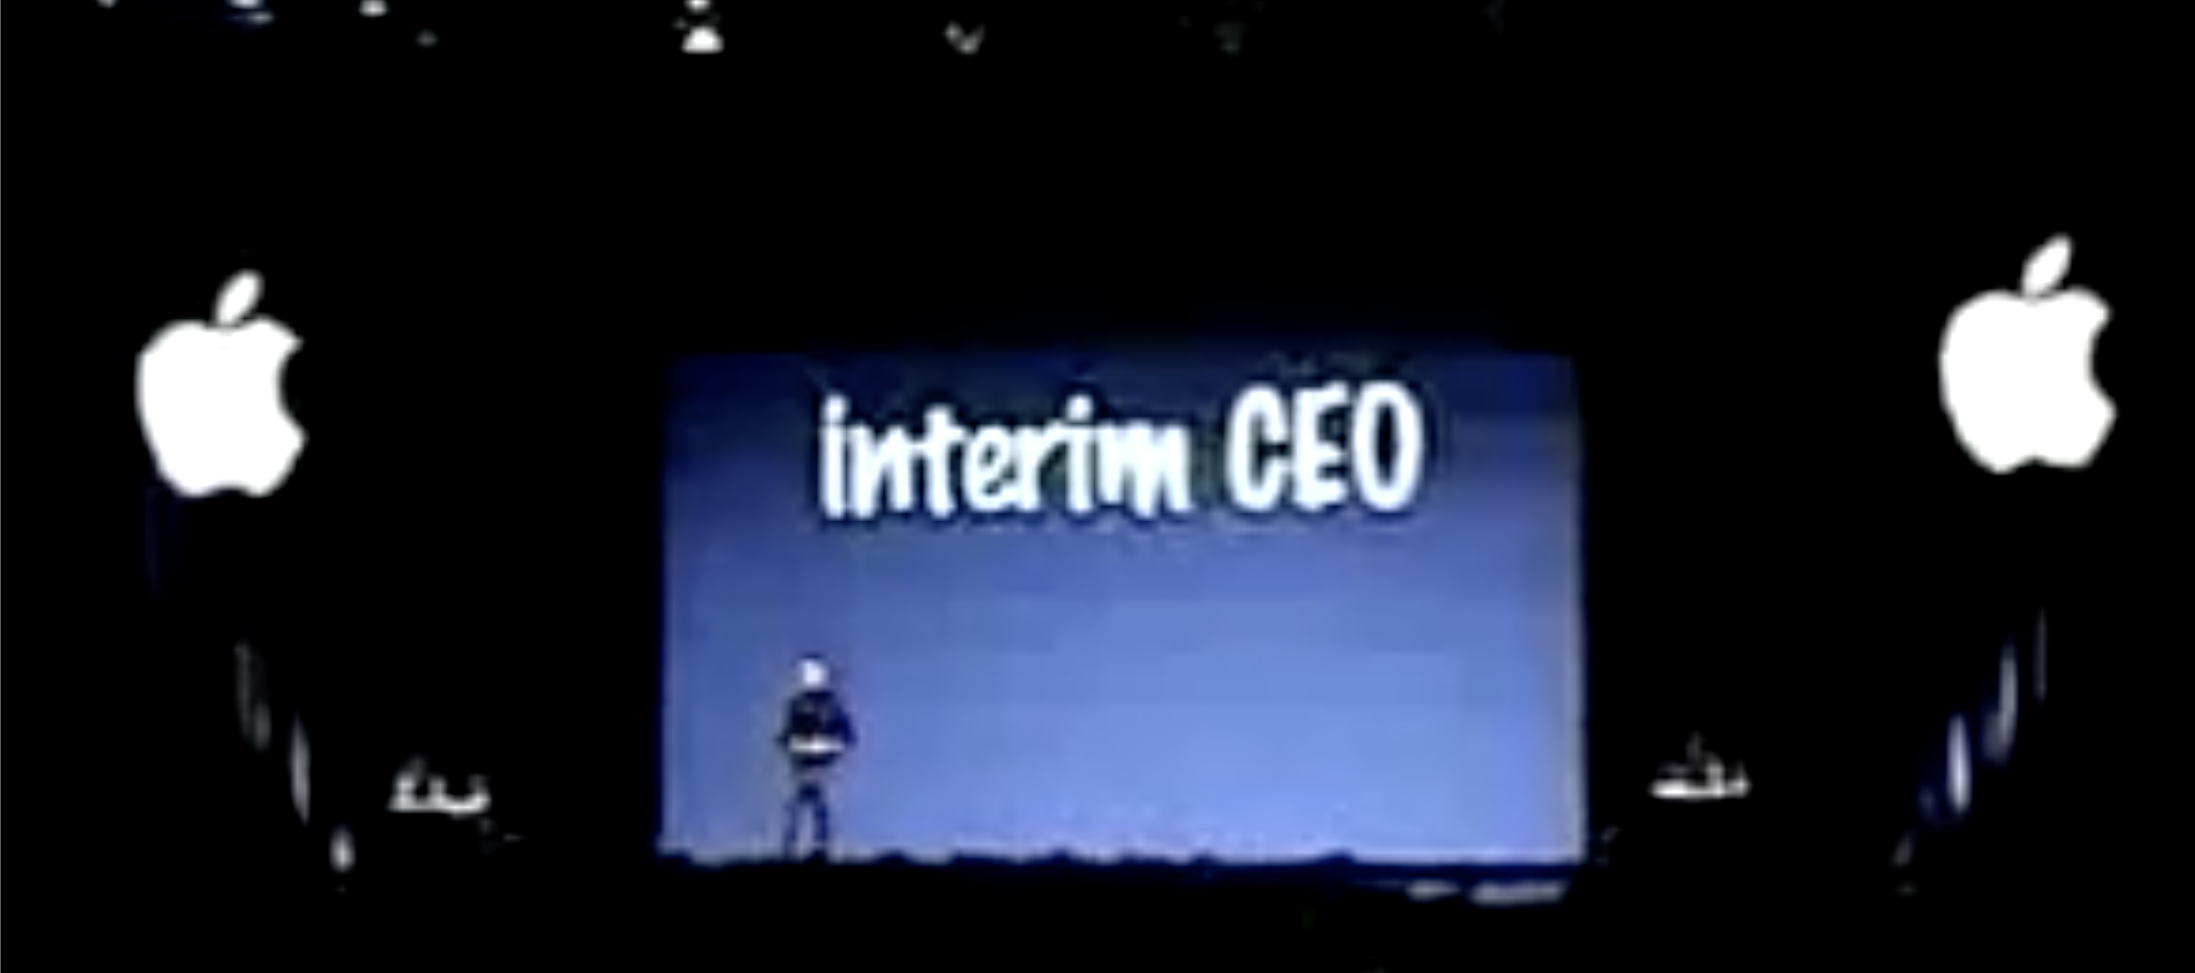 The interim CEO (iCEO) scare